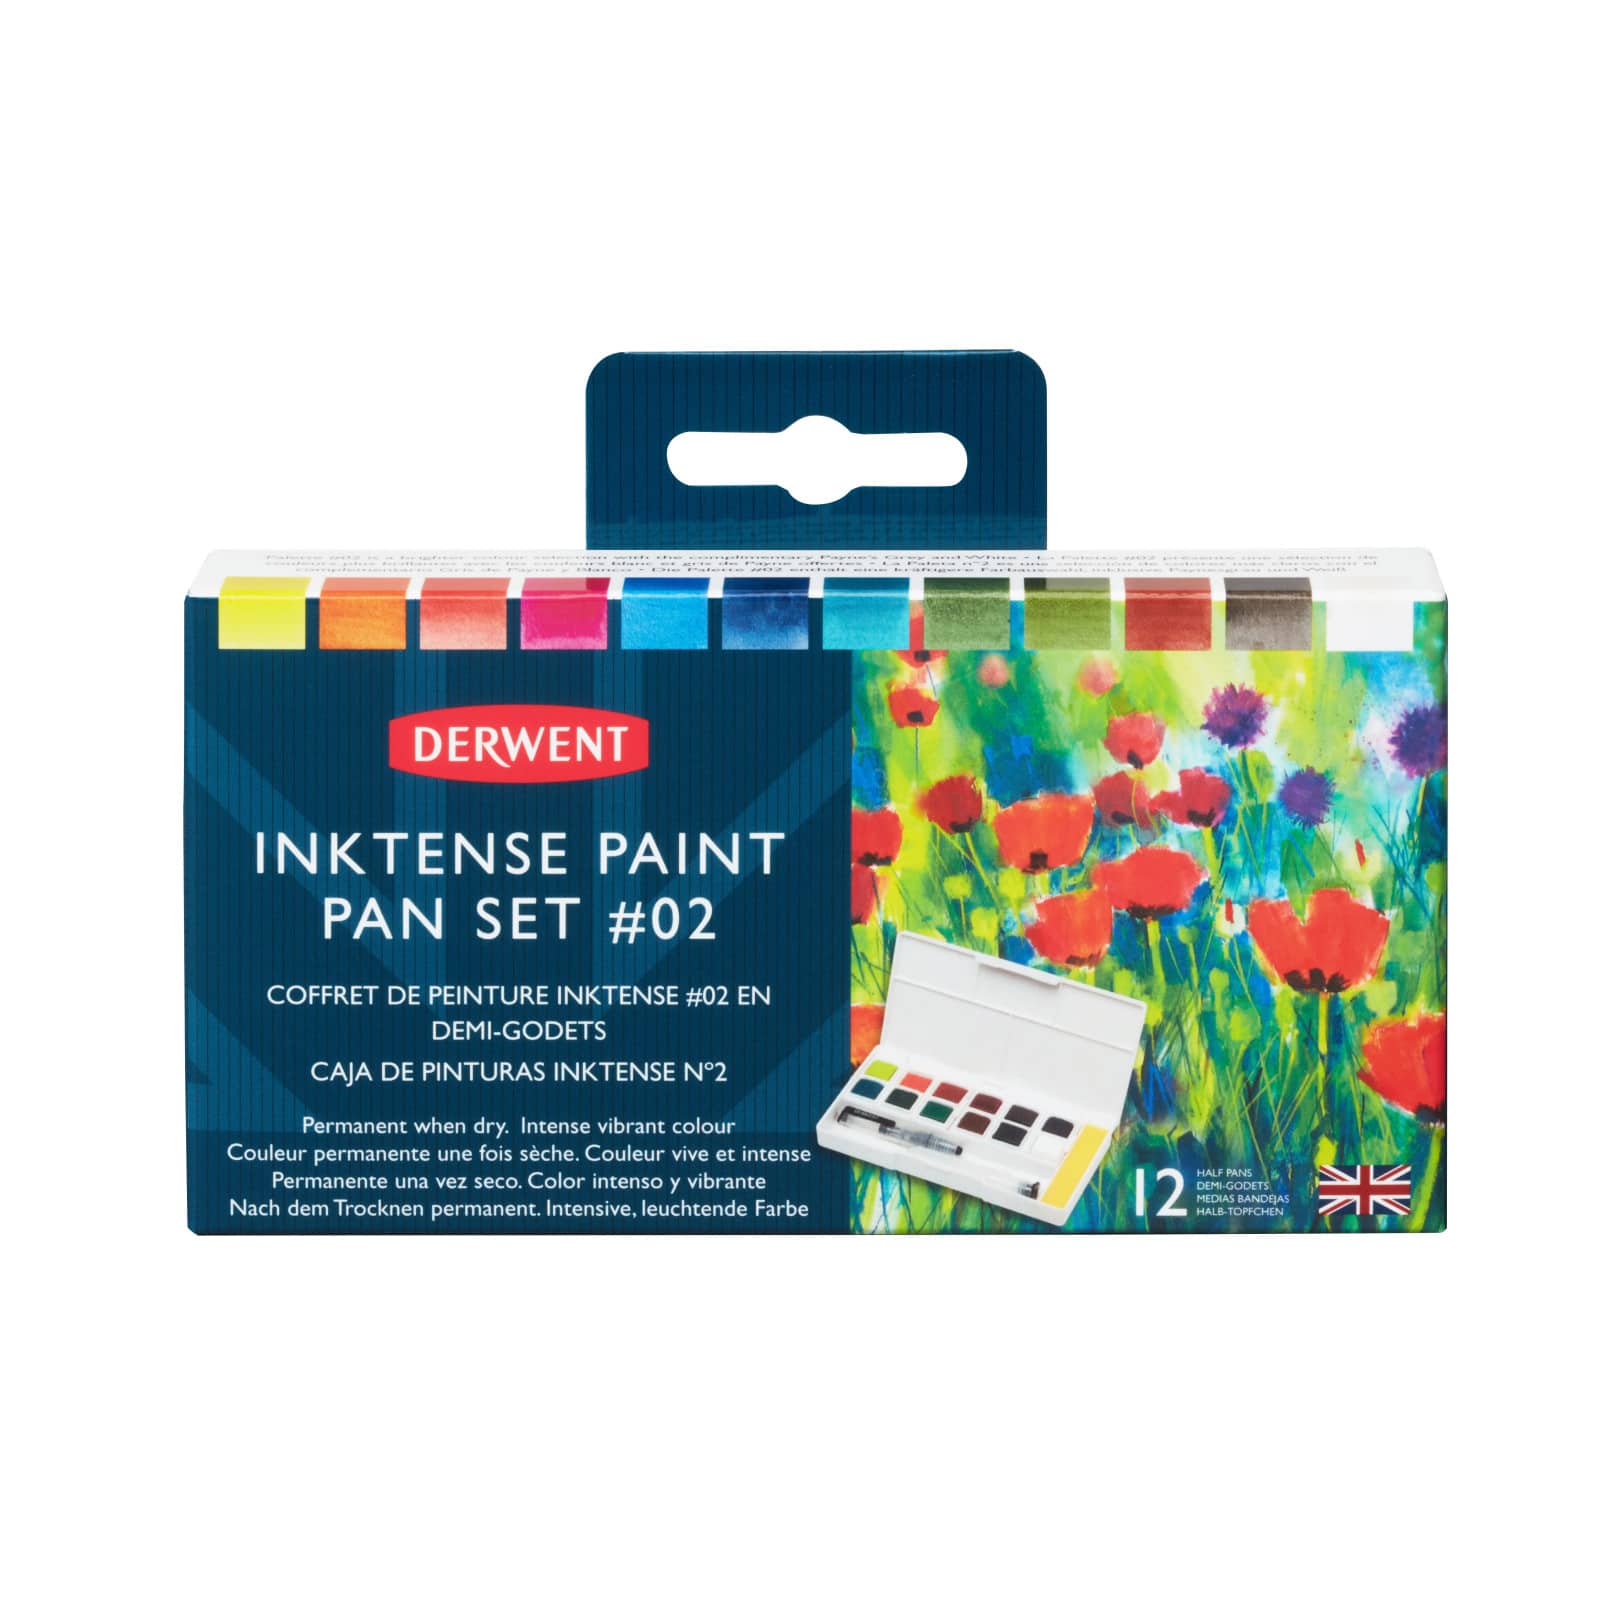 Derwent Inktense Paint Pan Set #2